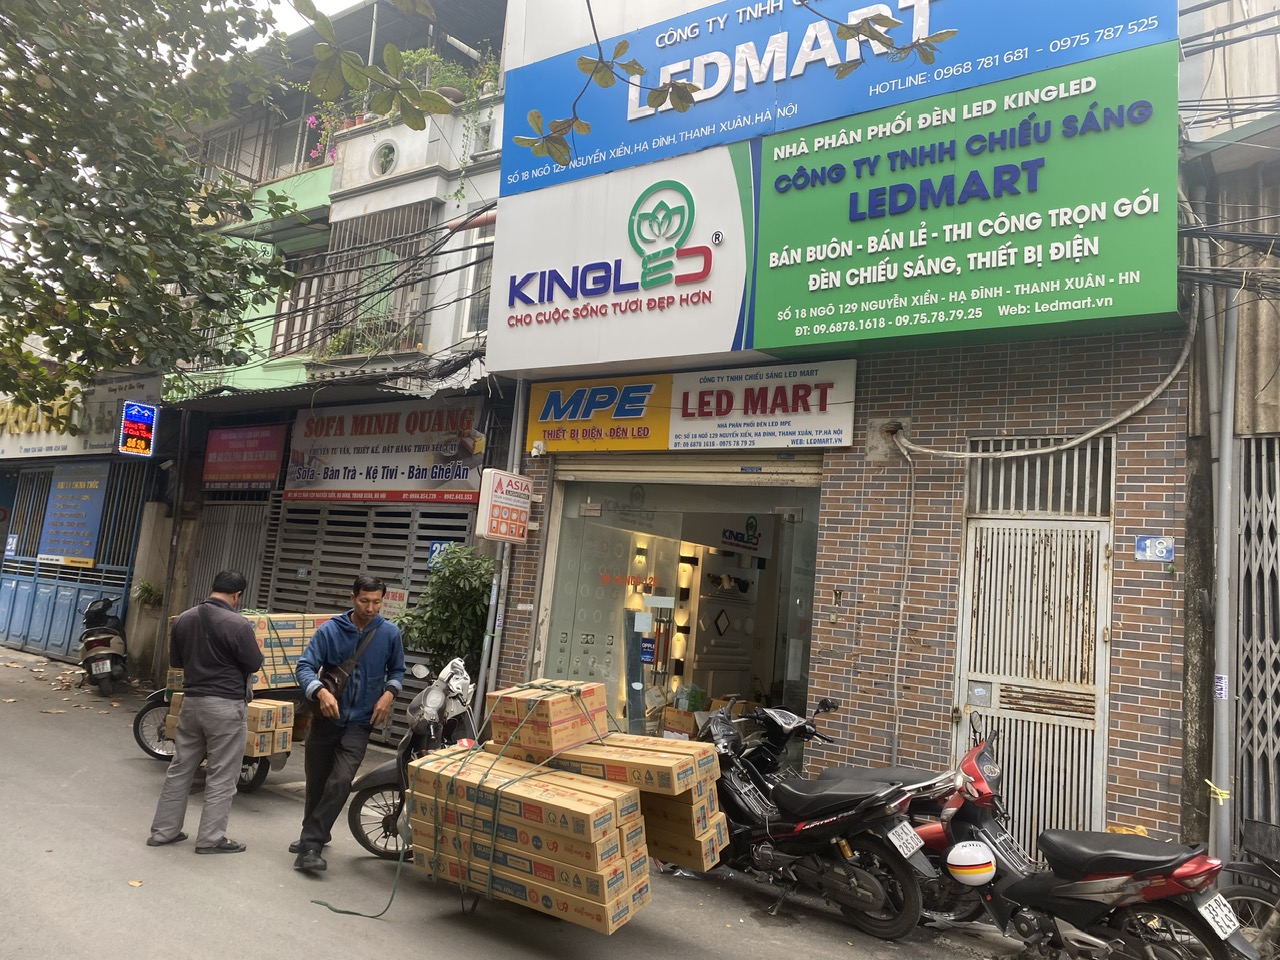 Địa chỉ bán đèn uy tín tại Hà Nội